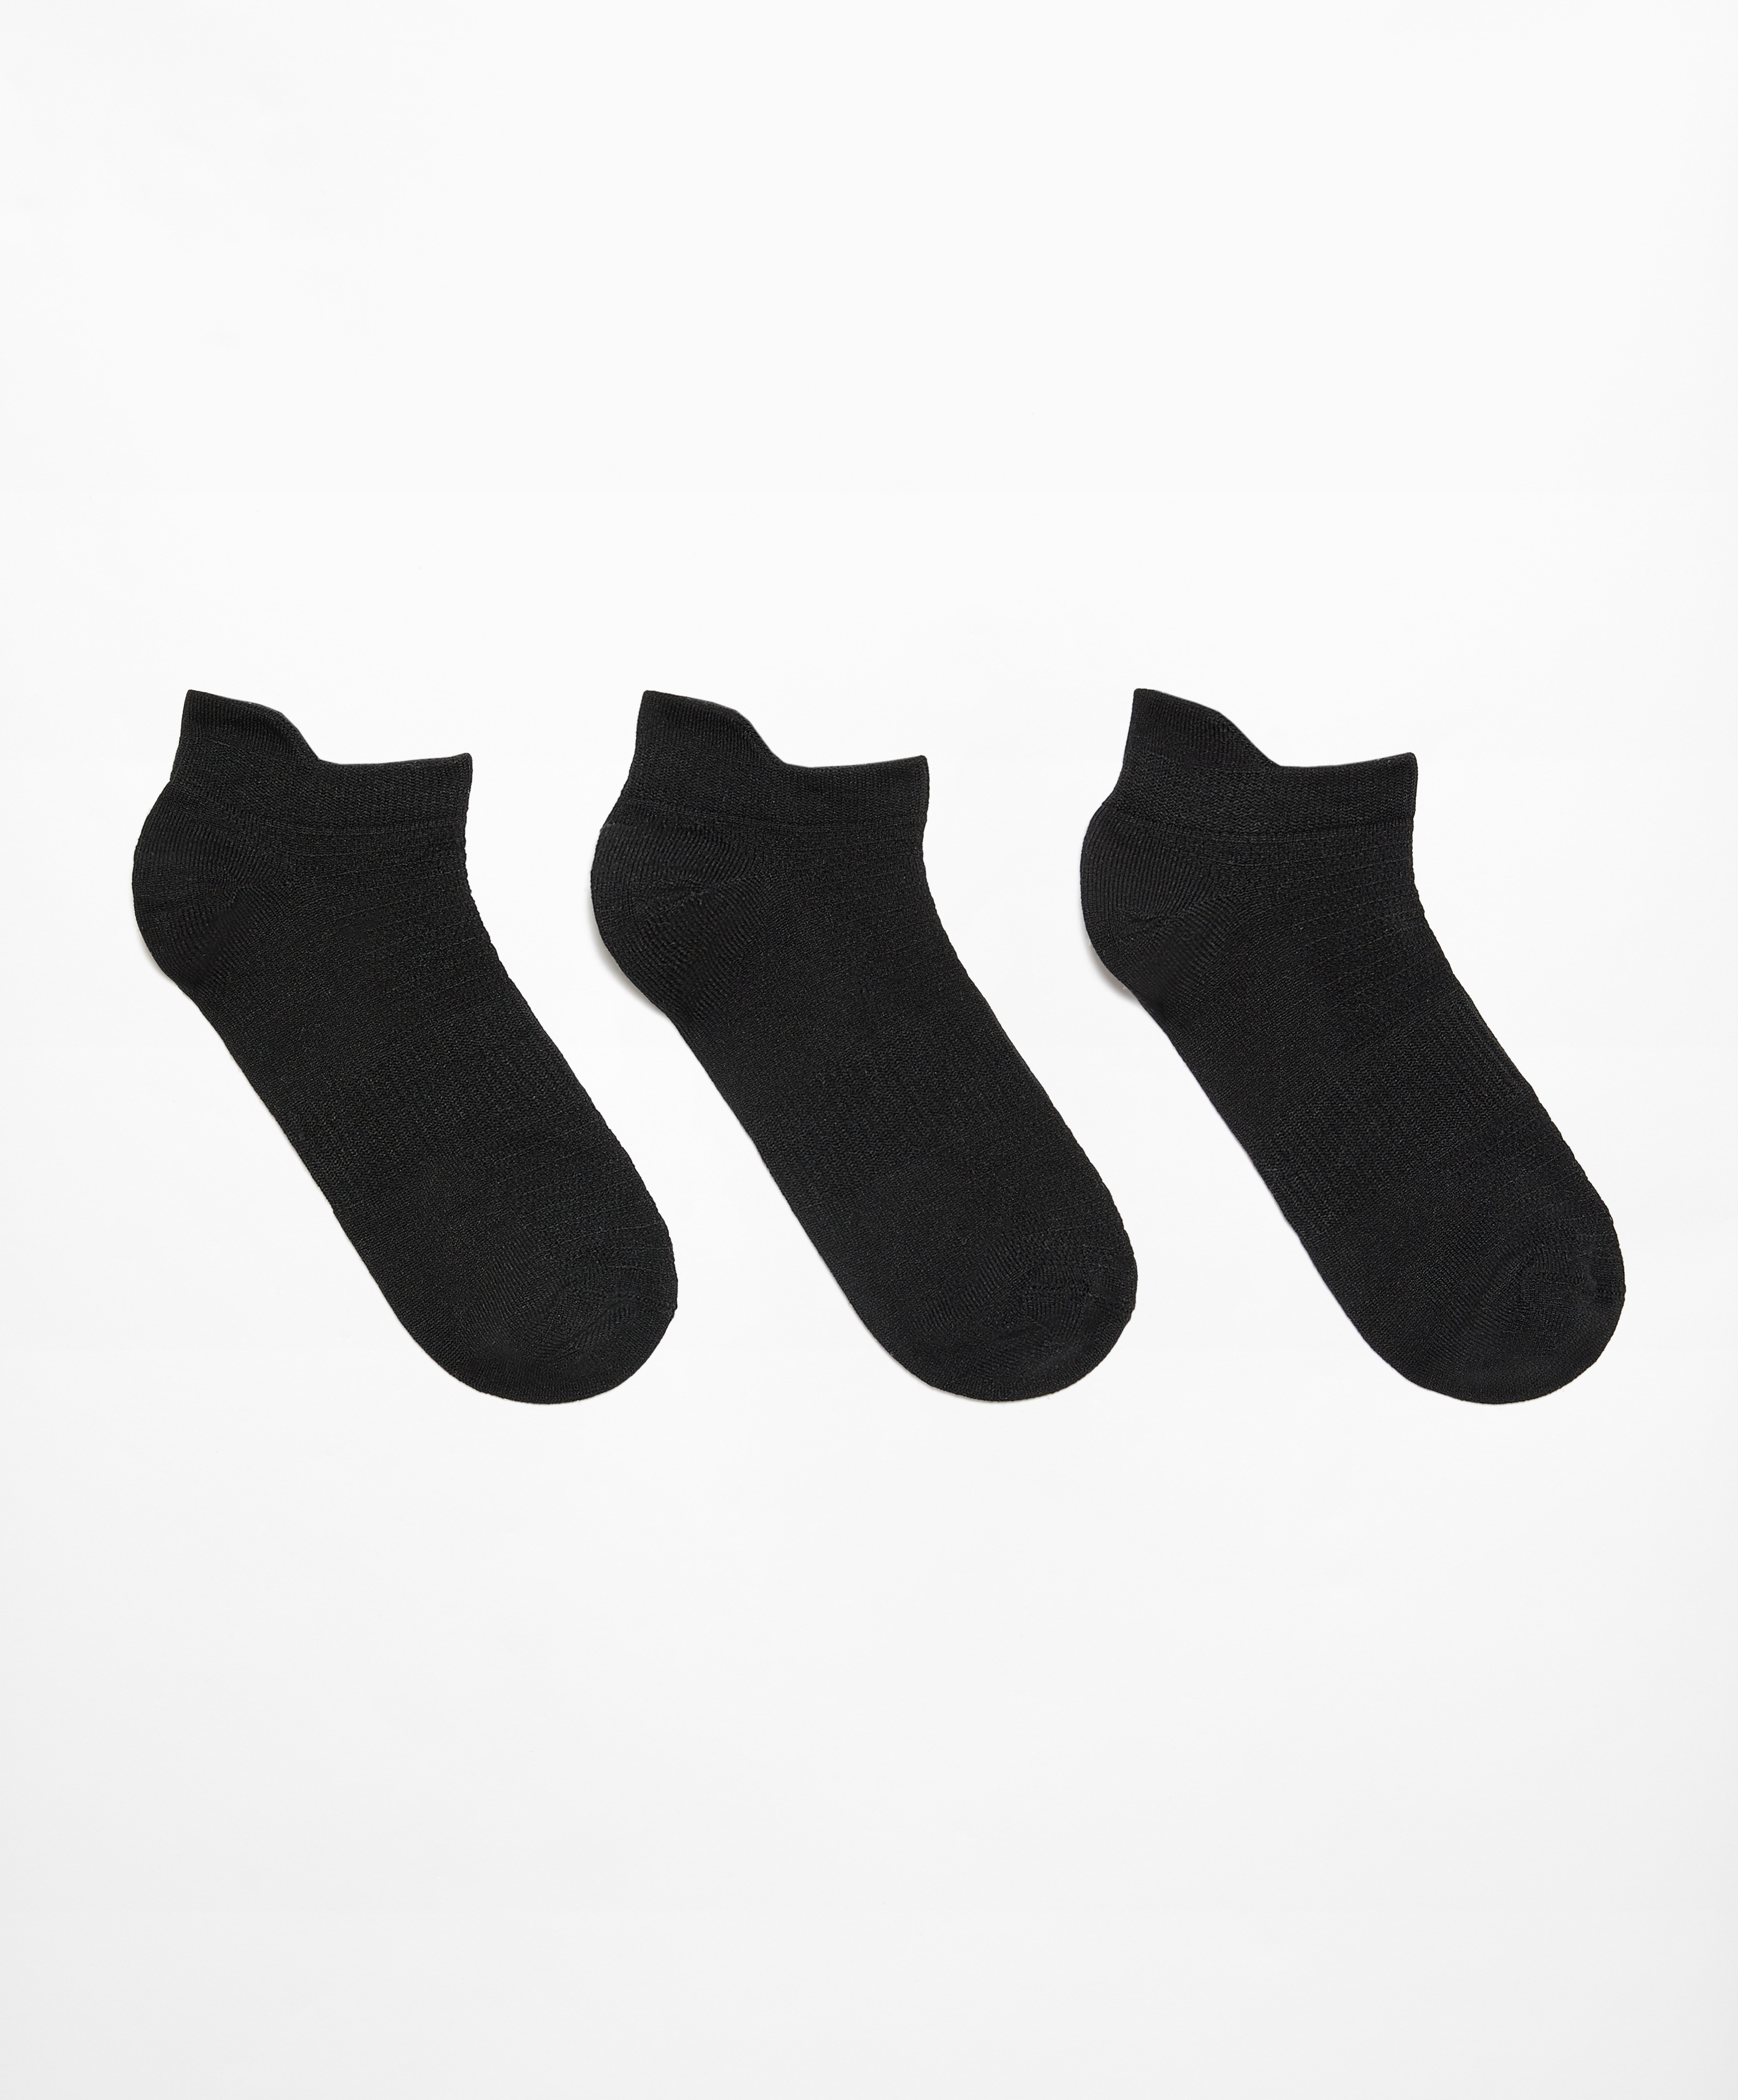 3 ζευγάρια αθλητικές κάλτσες sneaker με μείγμα από πολυαμίδιο